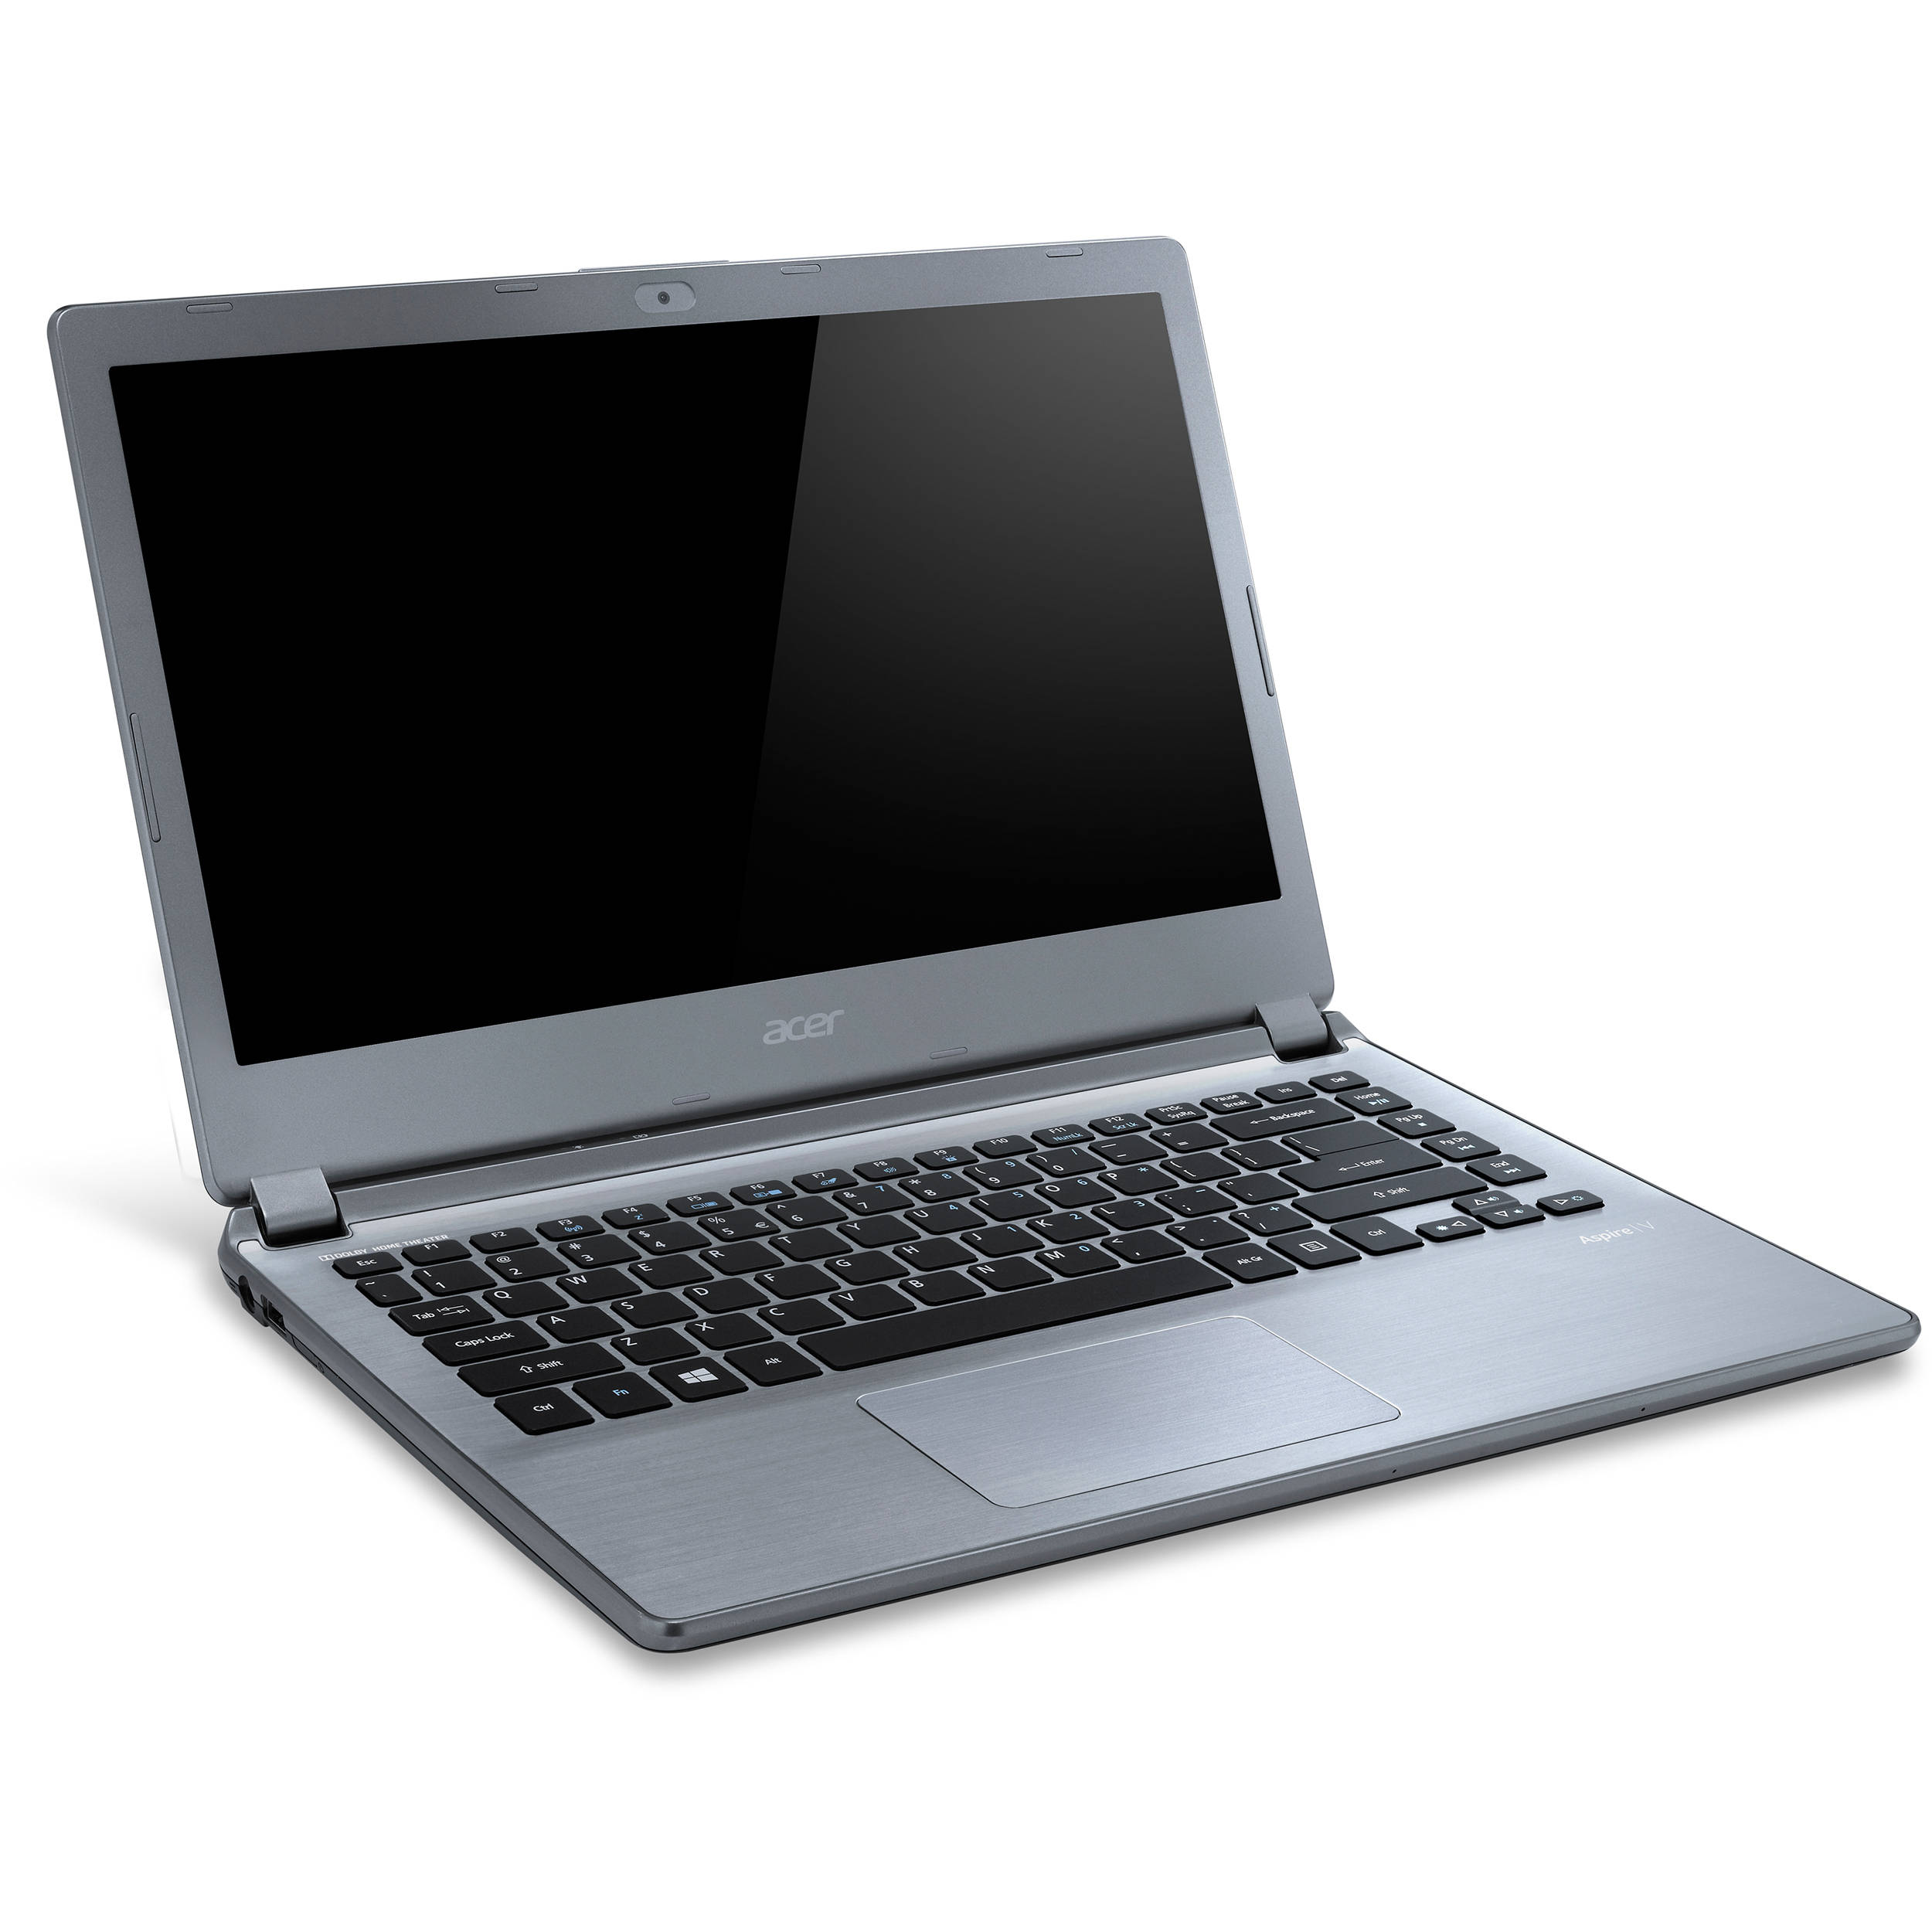 Acer Aspire V7-481 Notebook